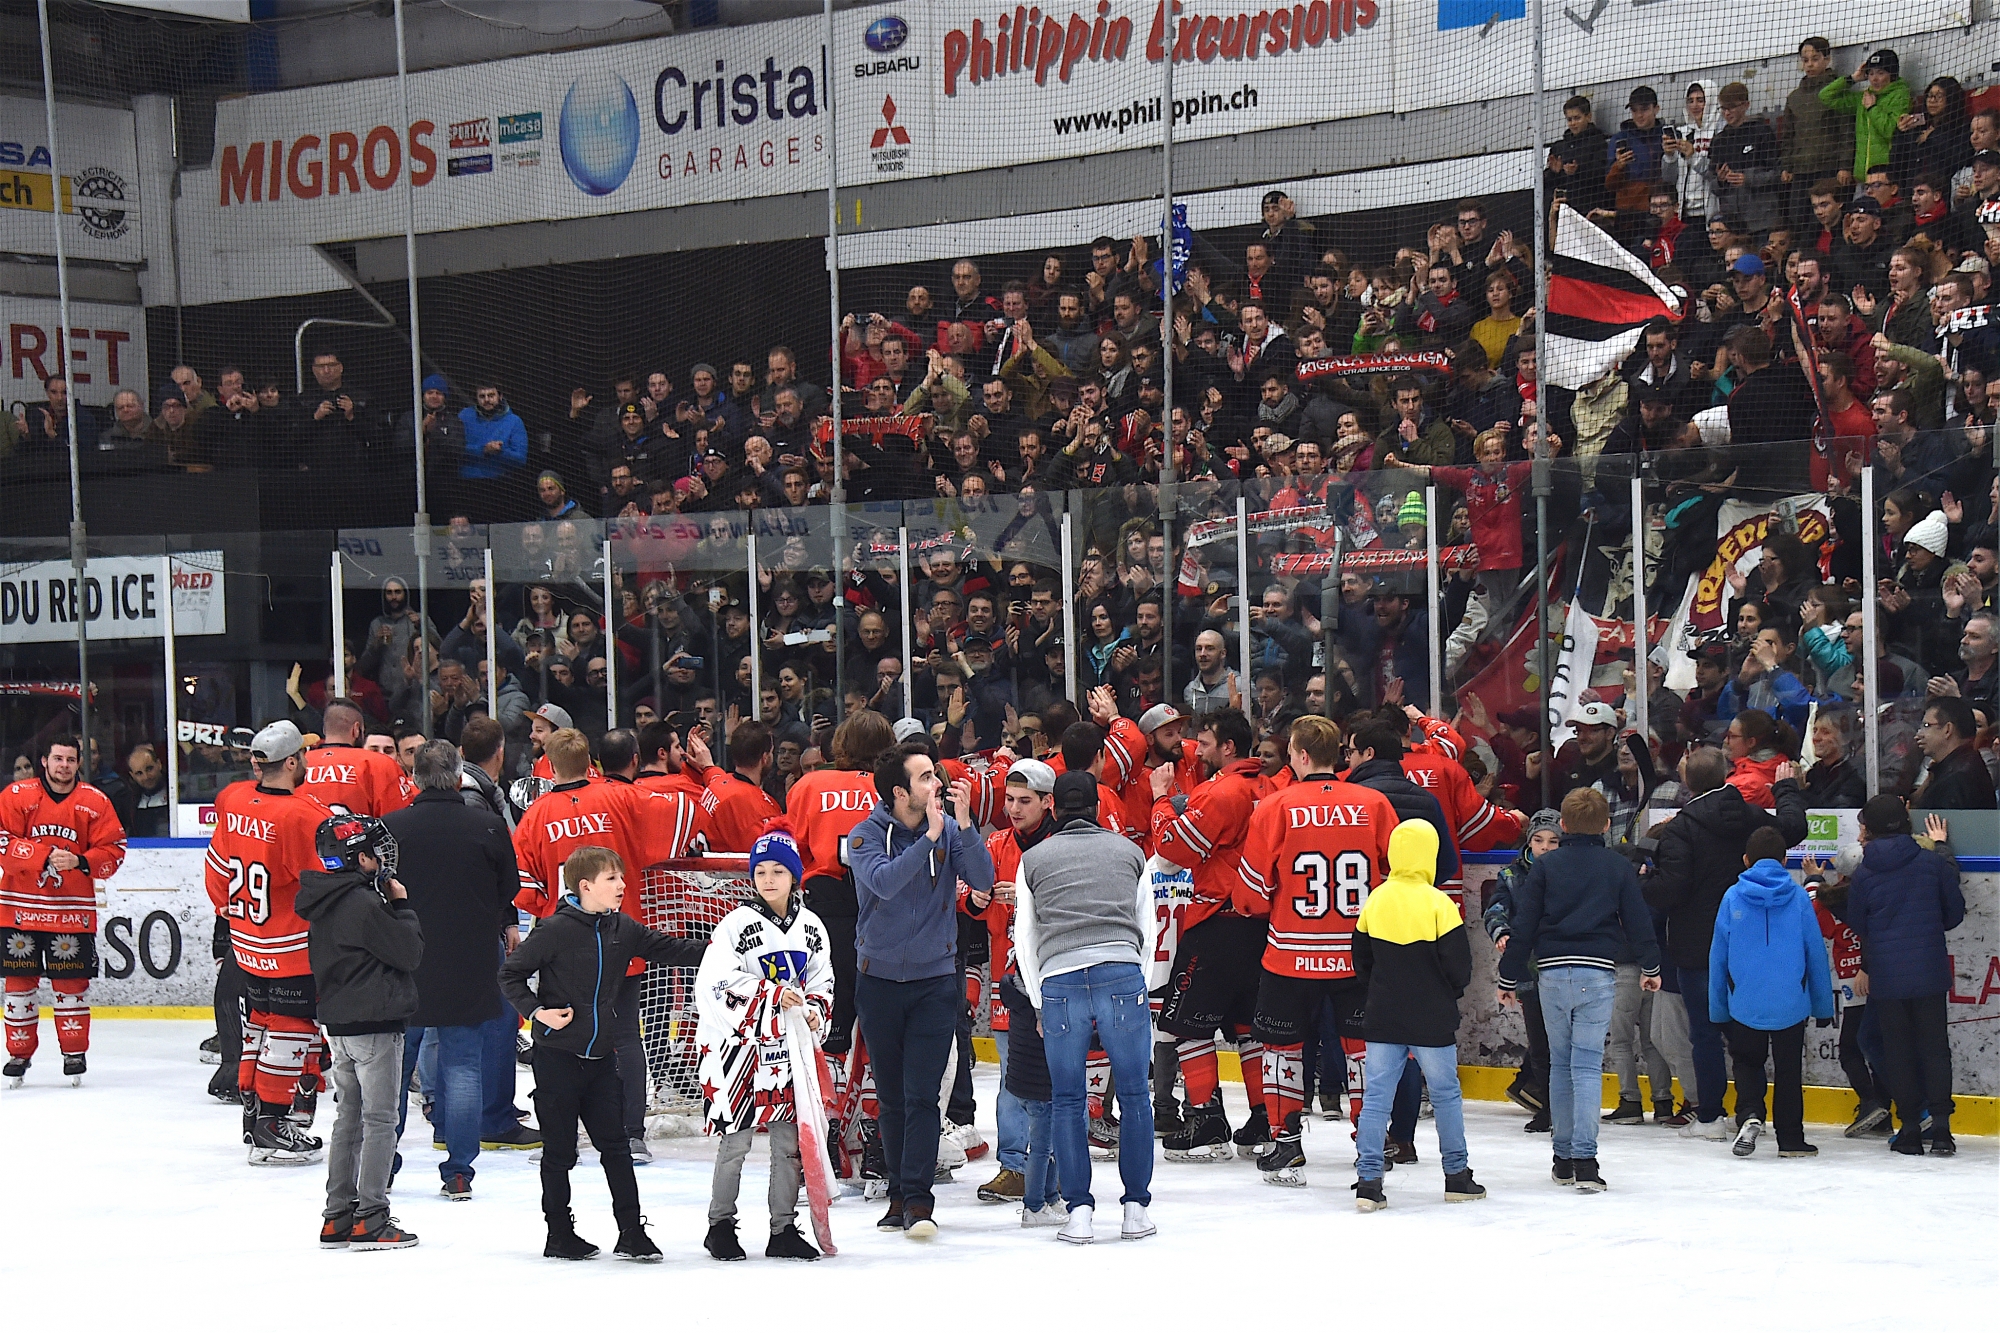 Le public était venu en nombre pour fêter la promotion de Red Ice, preuve que le hockey fait recette en Valais.